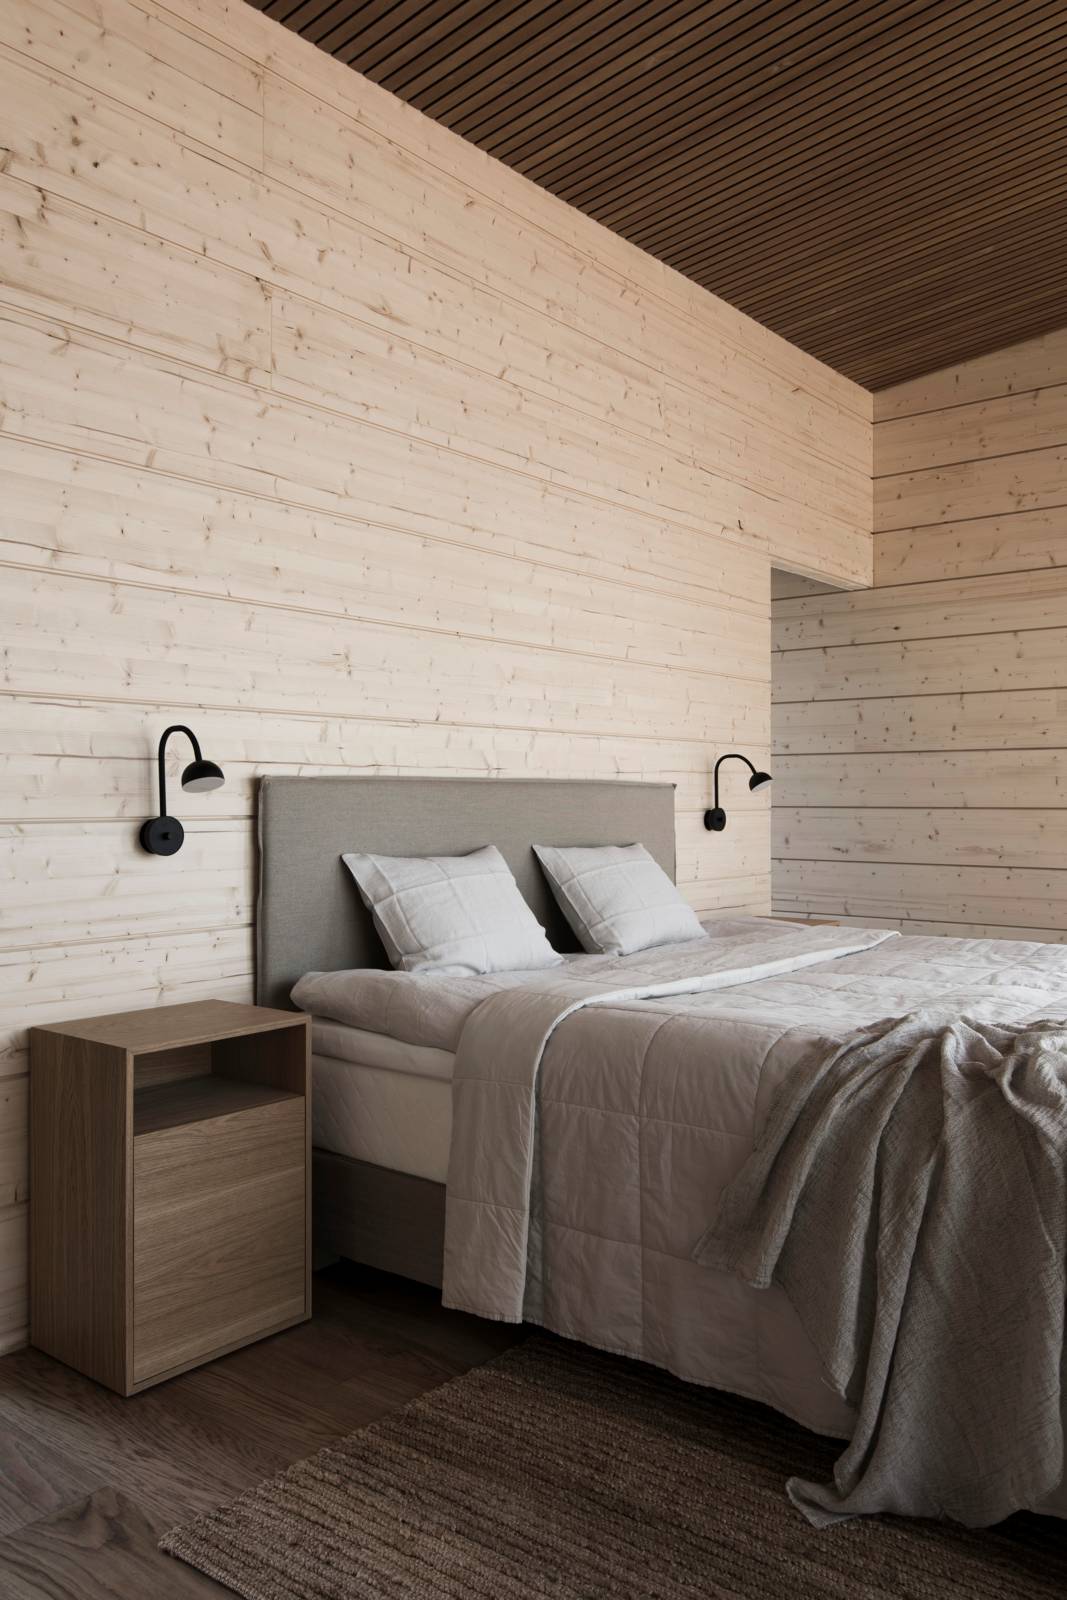 Villa Nordic Storiesin makuuhuoneessa leikitellään puun eri sävyillä.